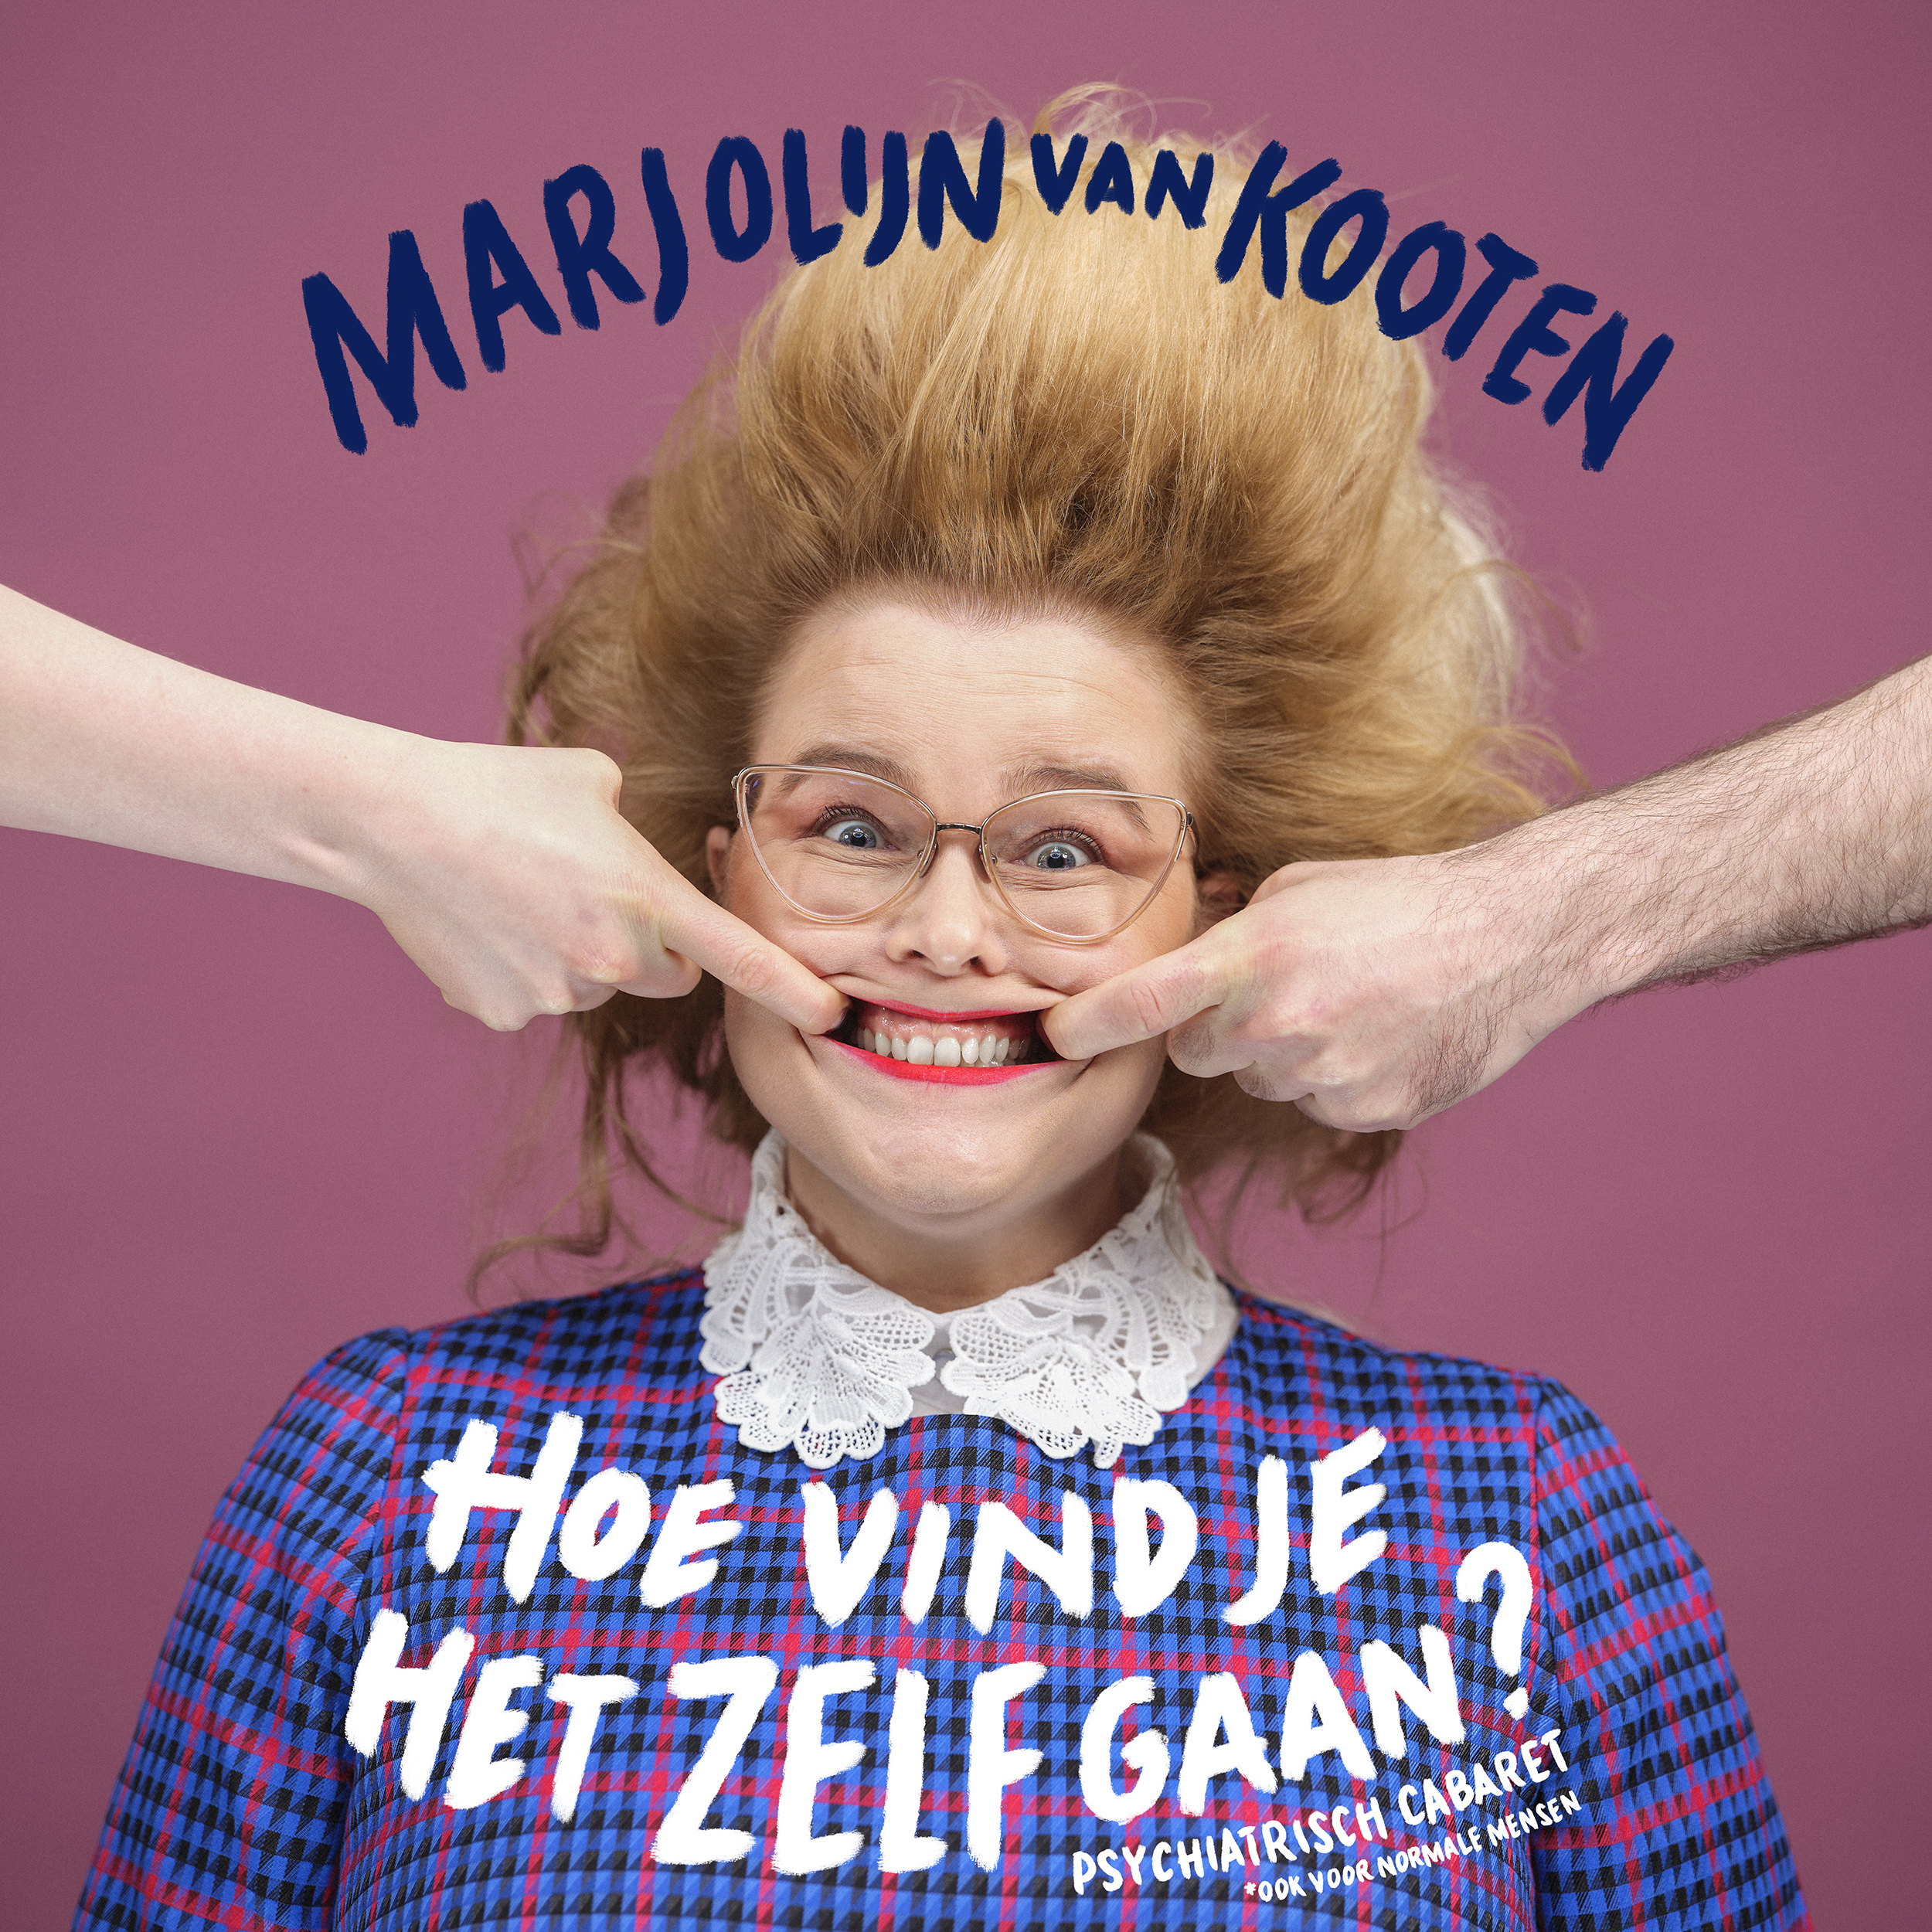 (c) Marjolijnvankooten.nl